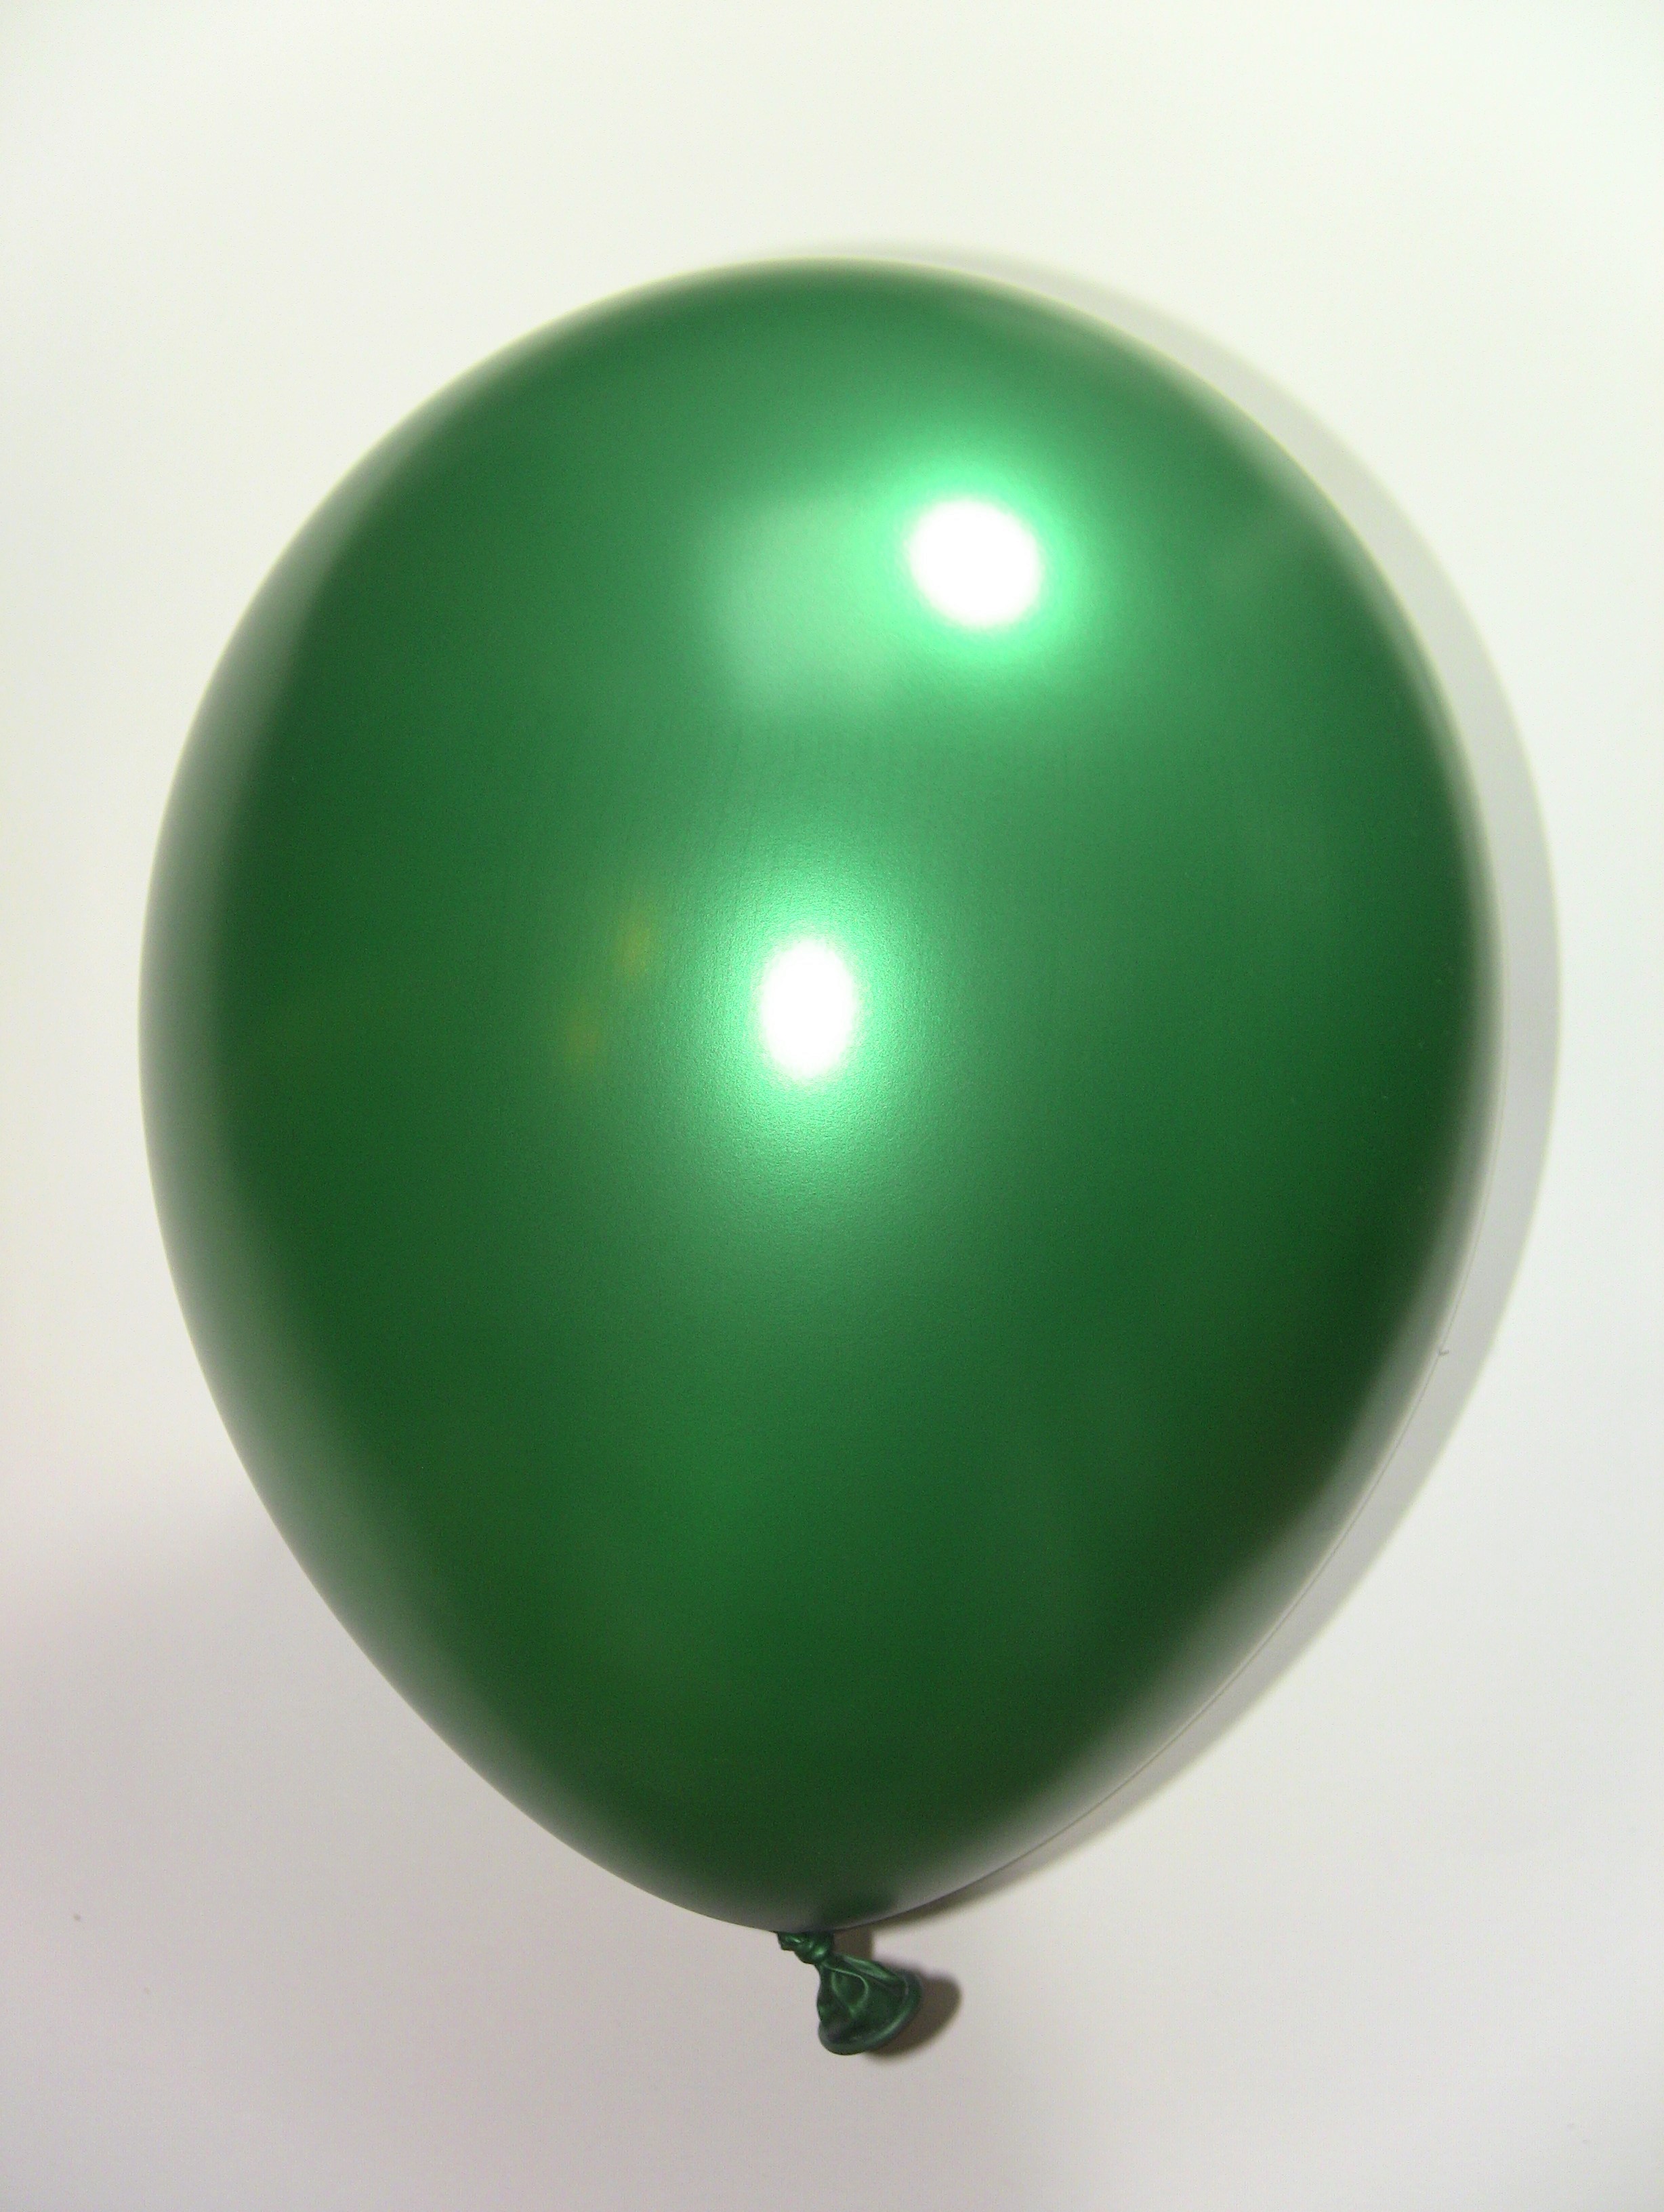 Latex Ballonnen metallic groen 30cm